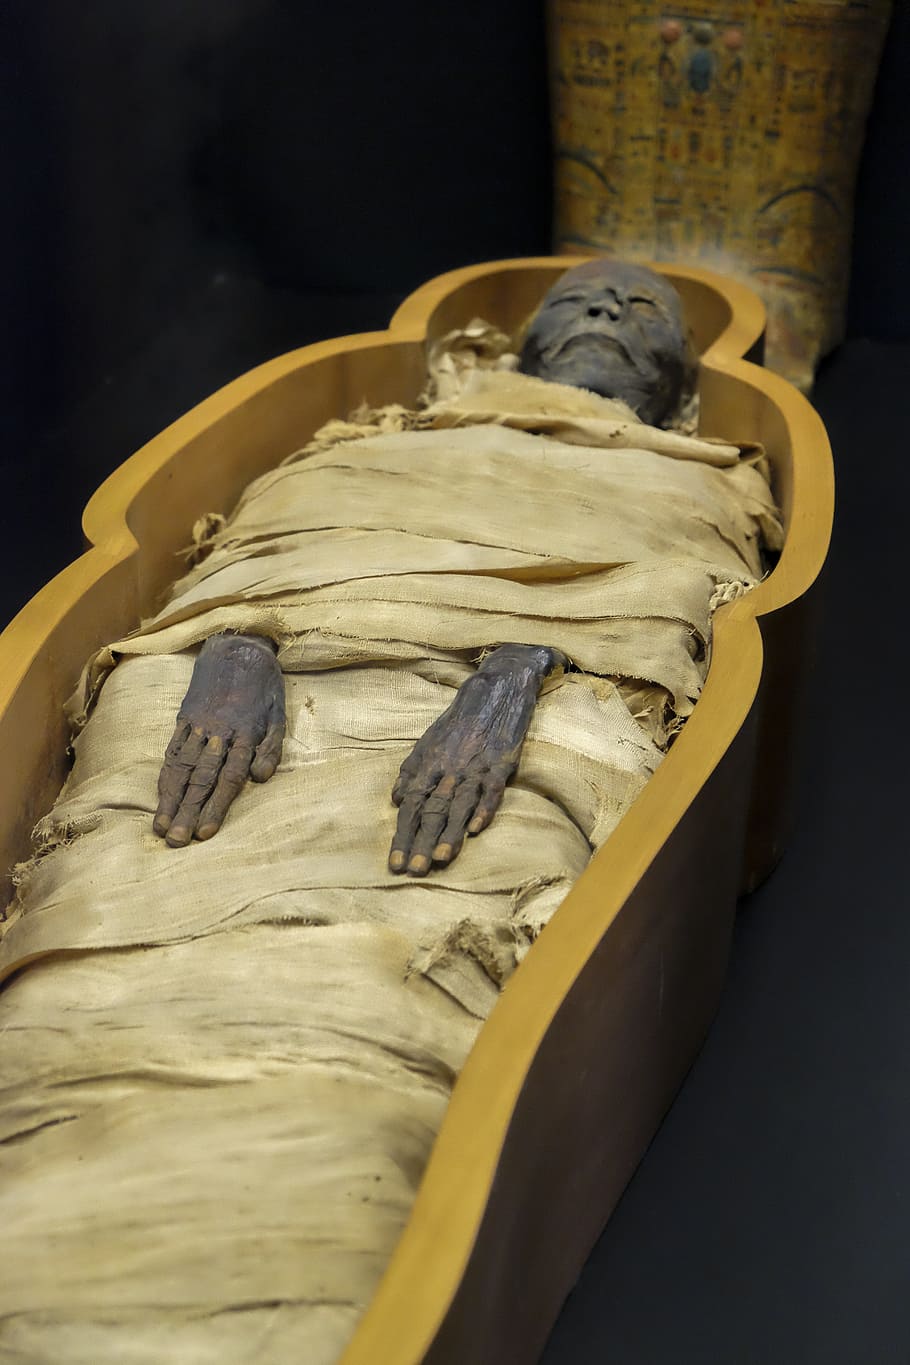 mumi di peti mati, mumi, museum, mesir, museum vatikan, makanan dan minuman, di dalam ruangan, makanan, tidak ada orang, hewan